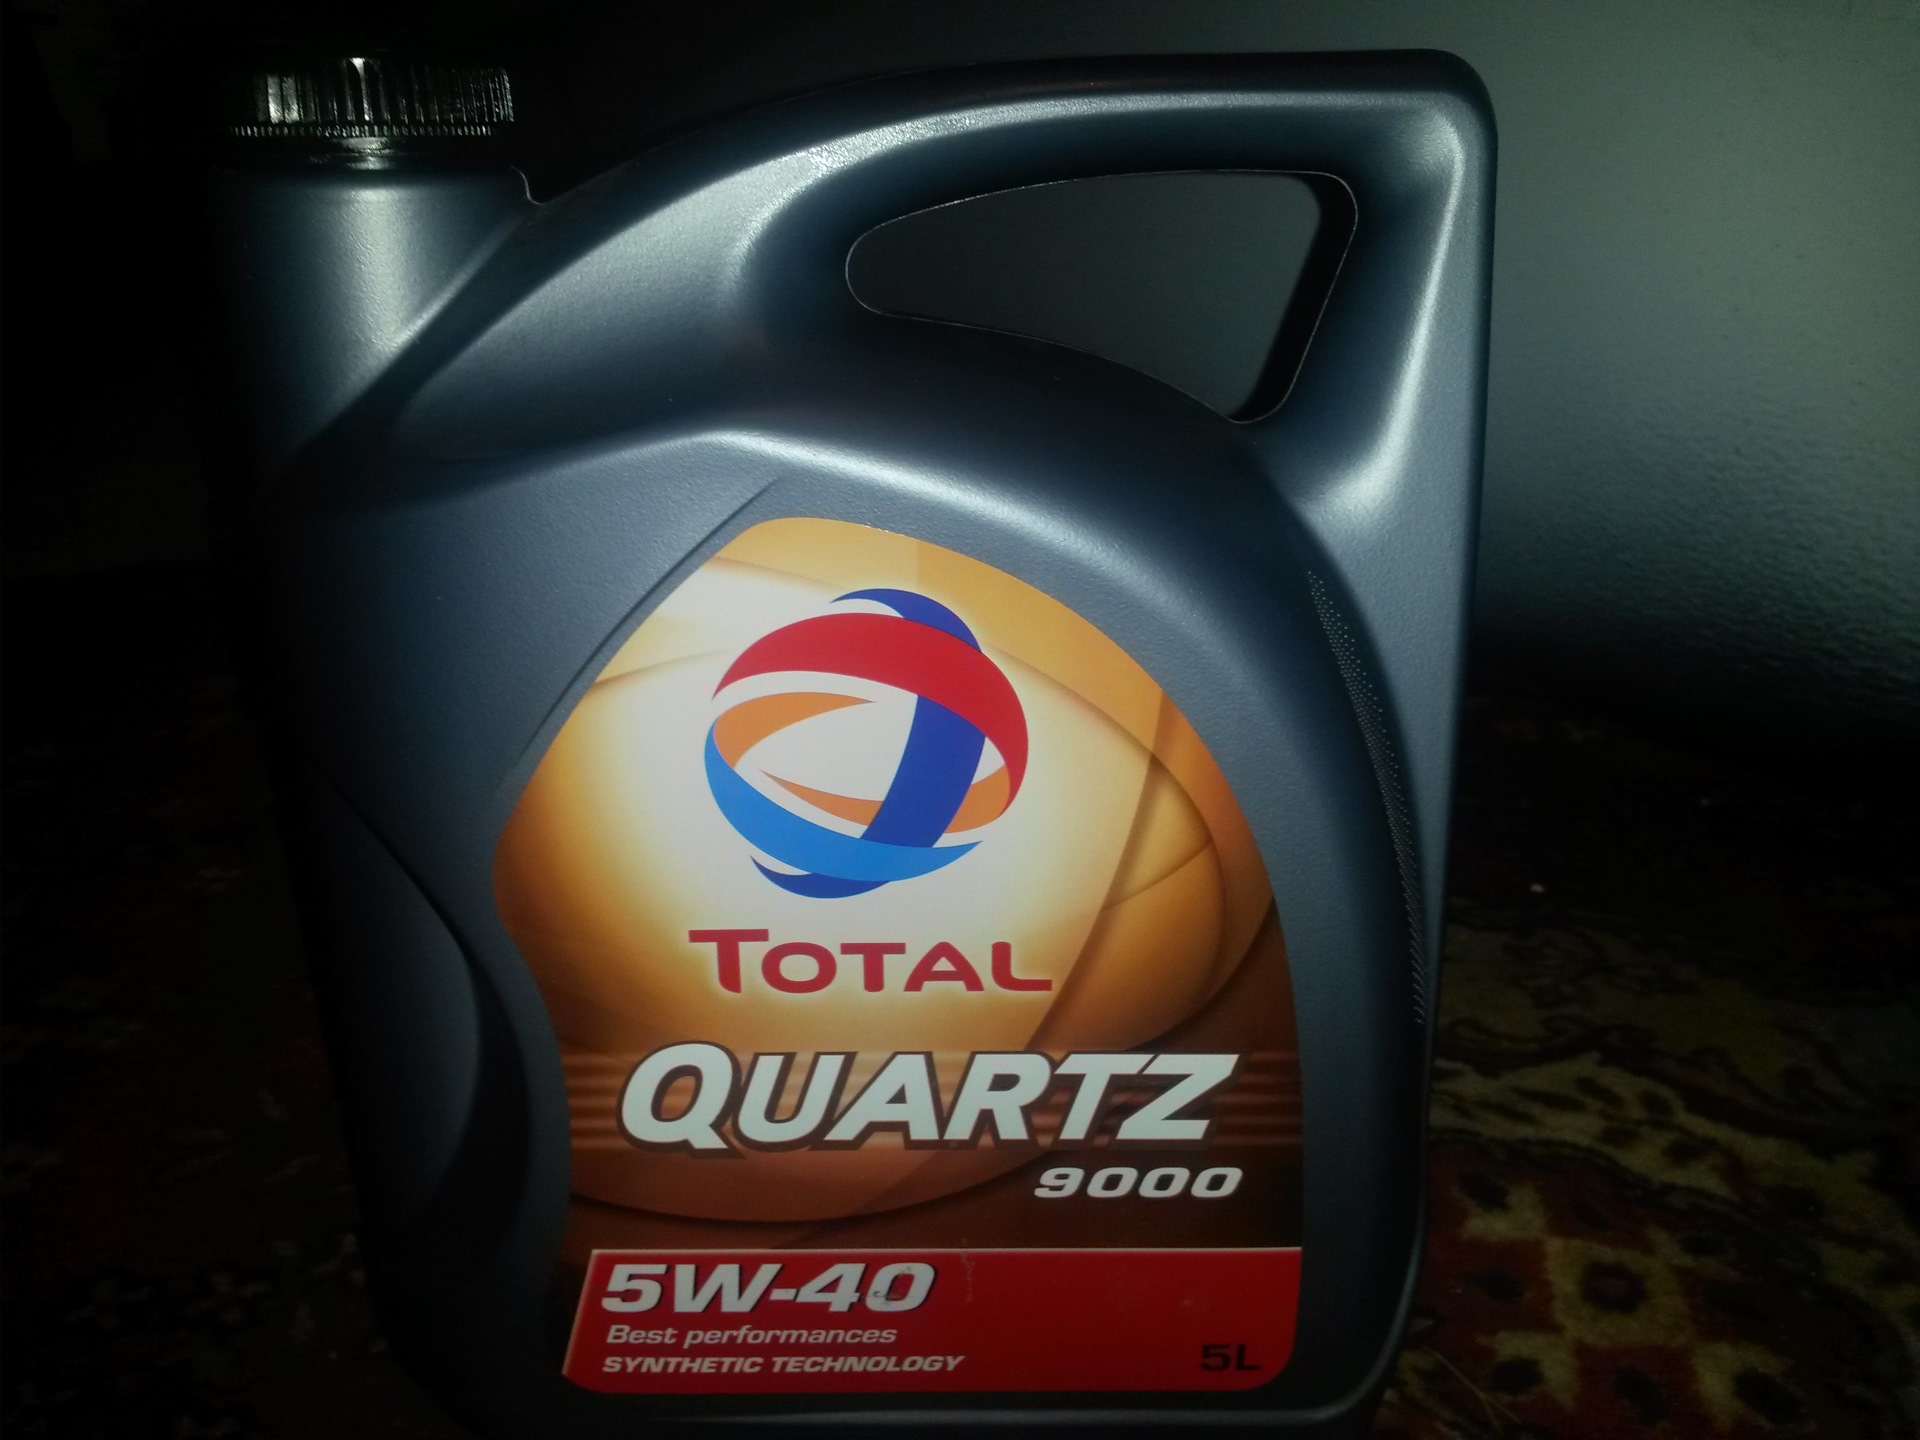 Сколько литров масла в двигателе мазда. Mazda 5w40. Моторное масло для Мазда СХ 5 2.5 литра. Mazda 6 2013 масло total. Масло тотал 5 w30 в Мазда.